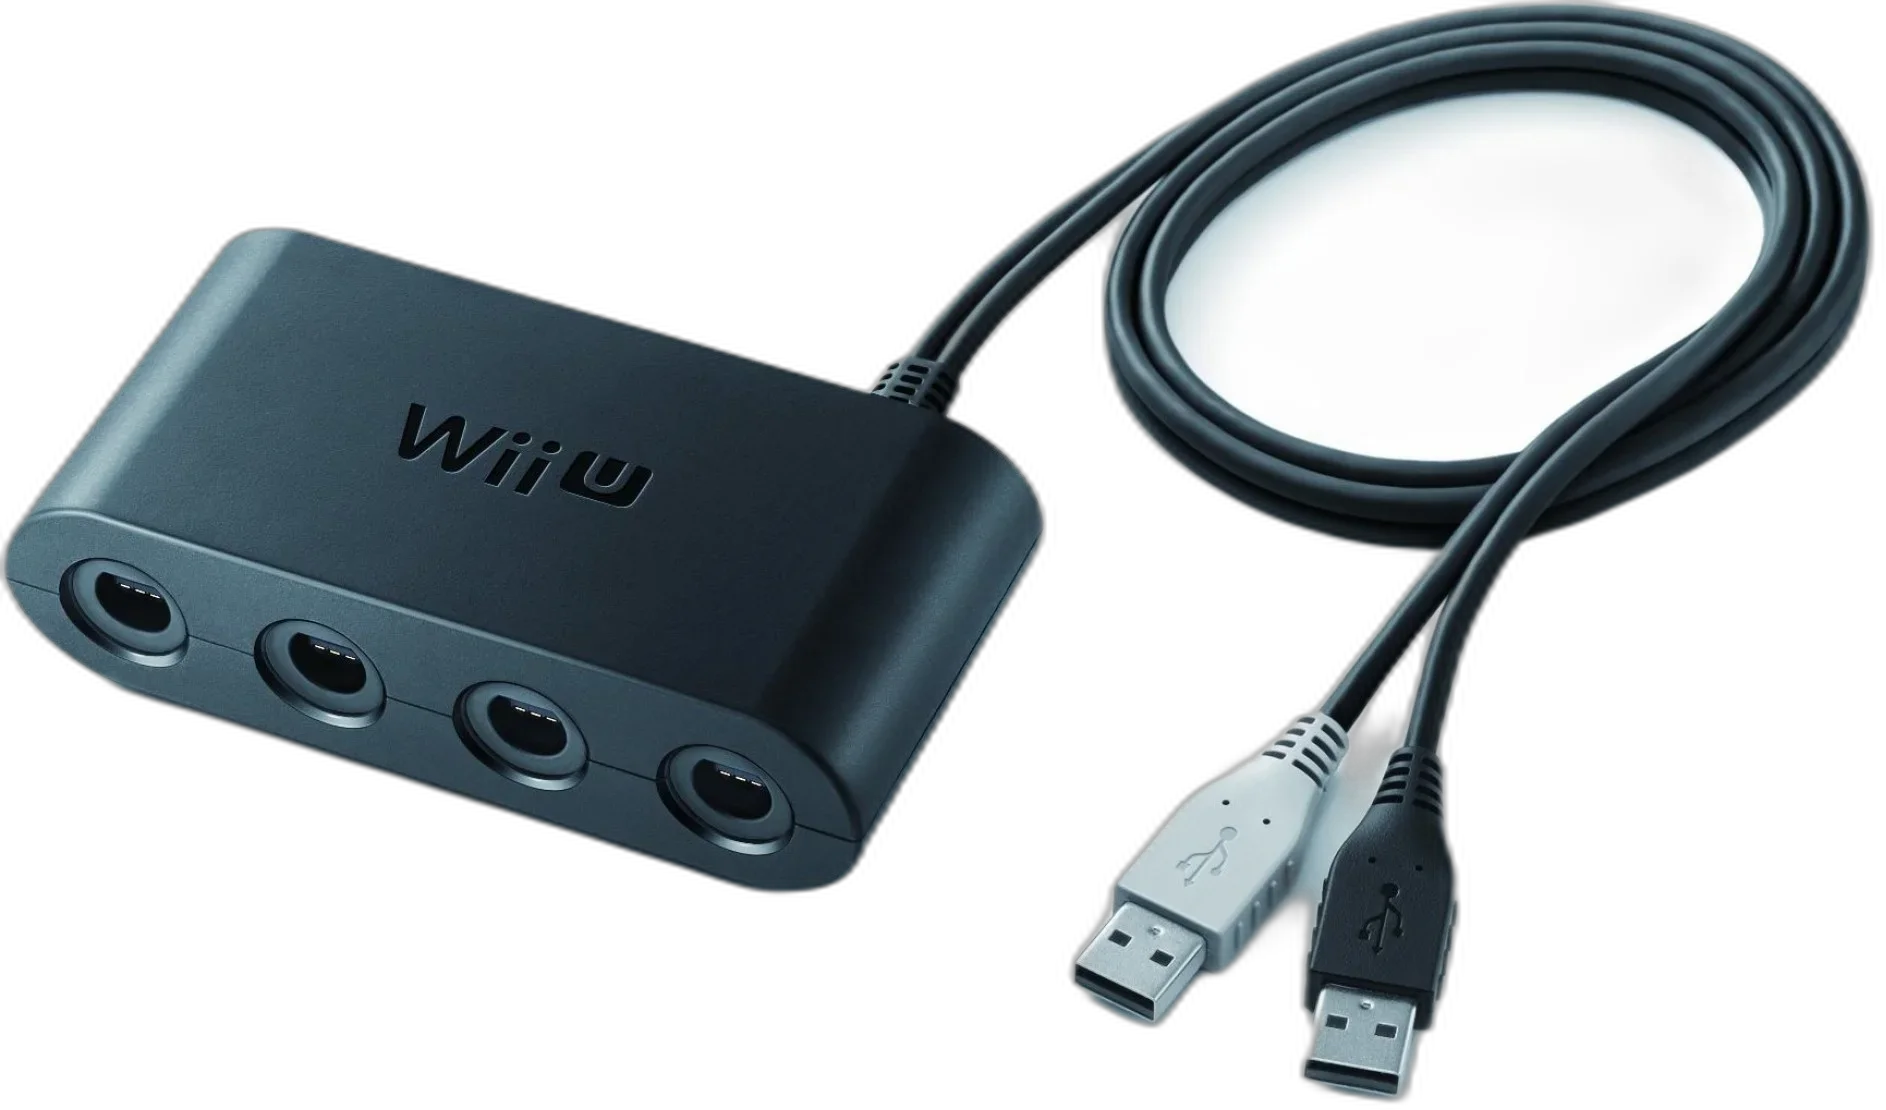  Nintendo Wii U GameCube Adapter [JP]